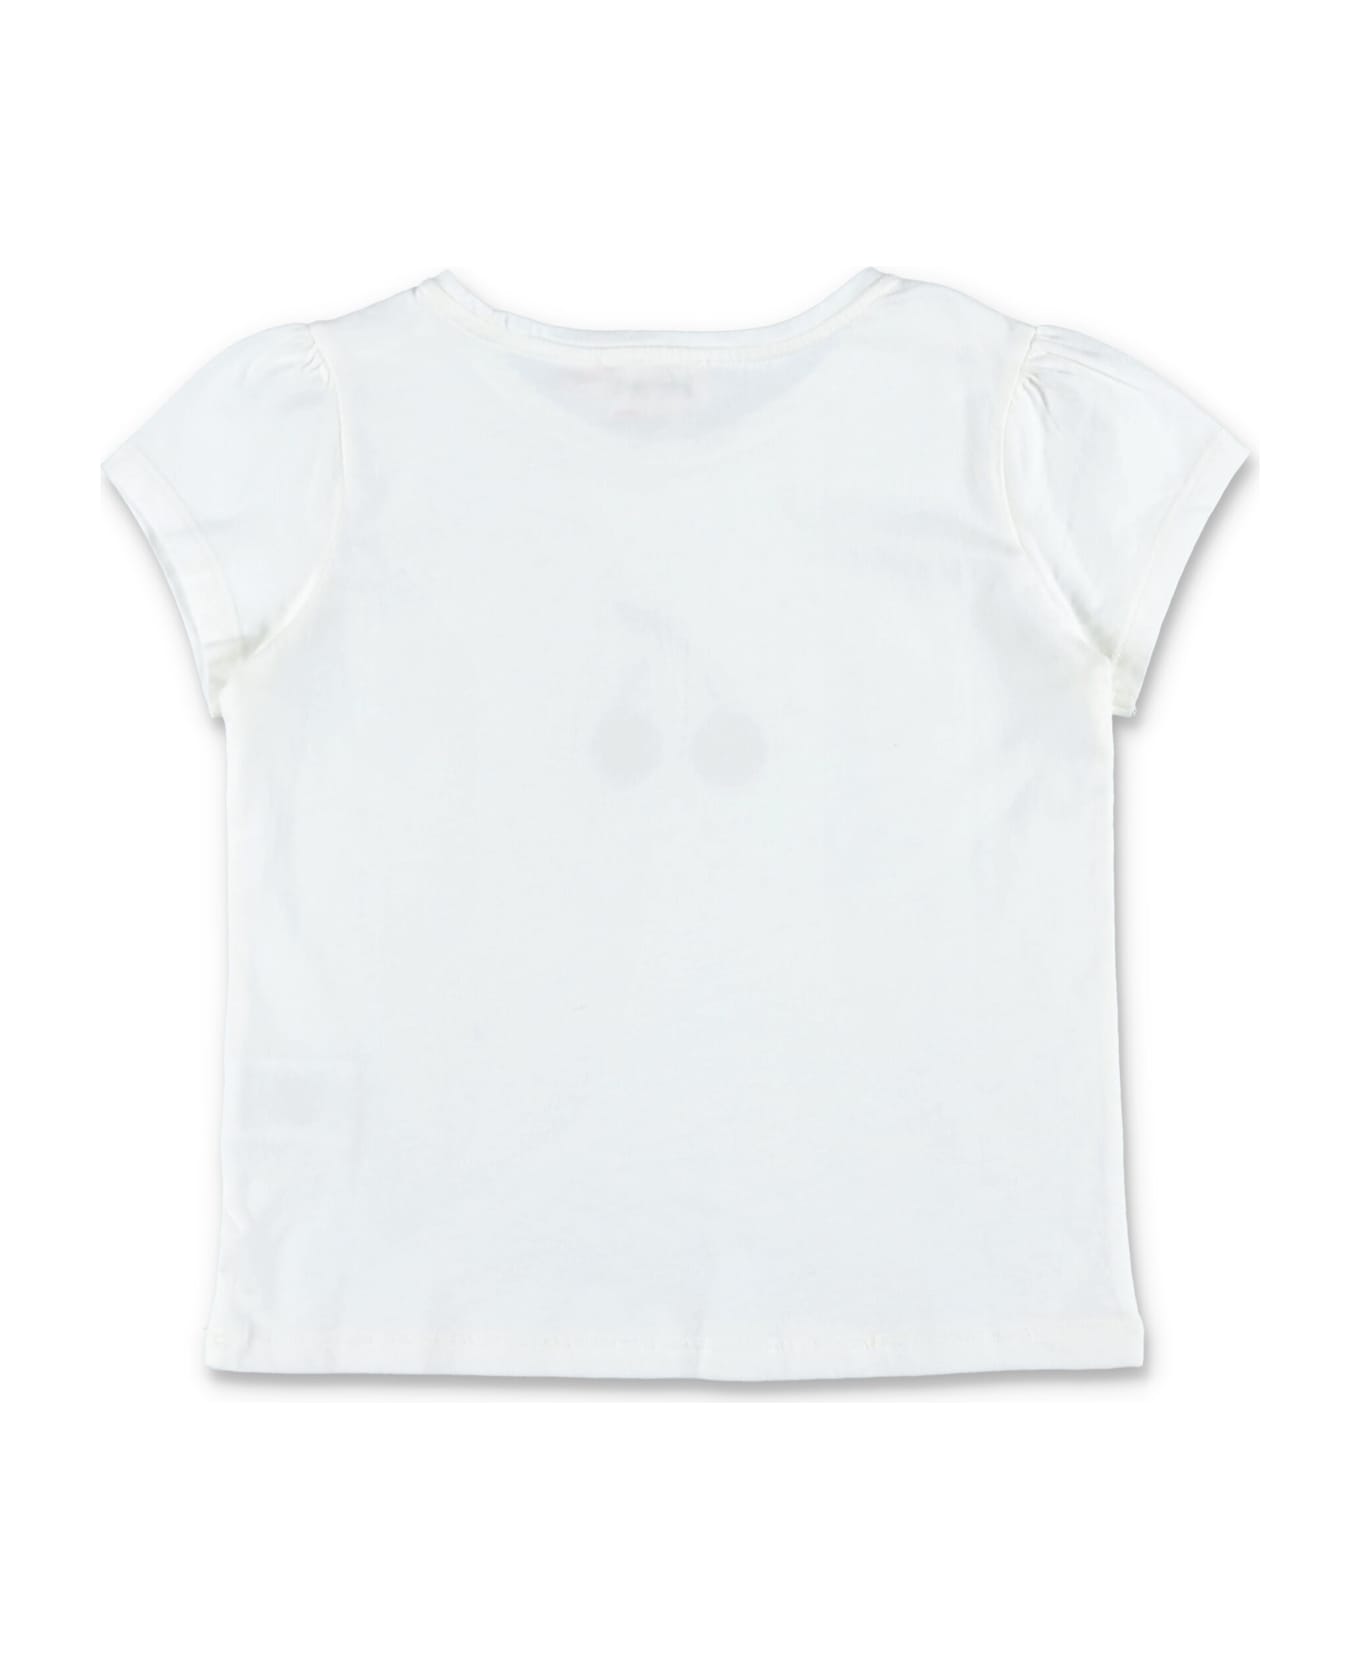 Bonpoint Capricia T-shirt - WHITE